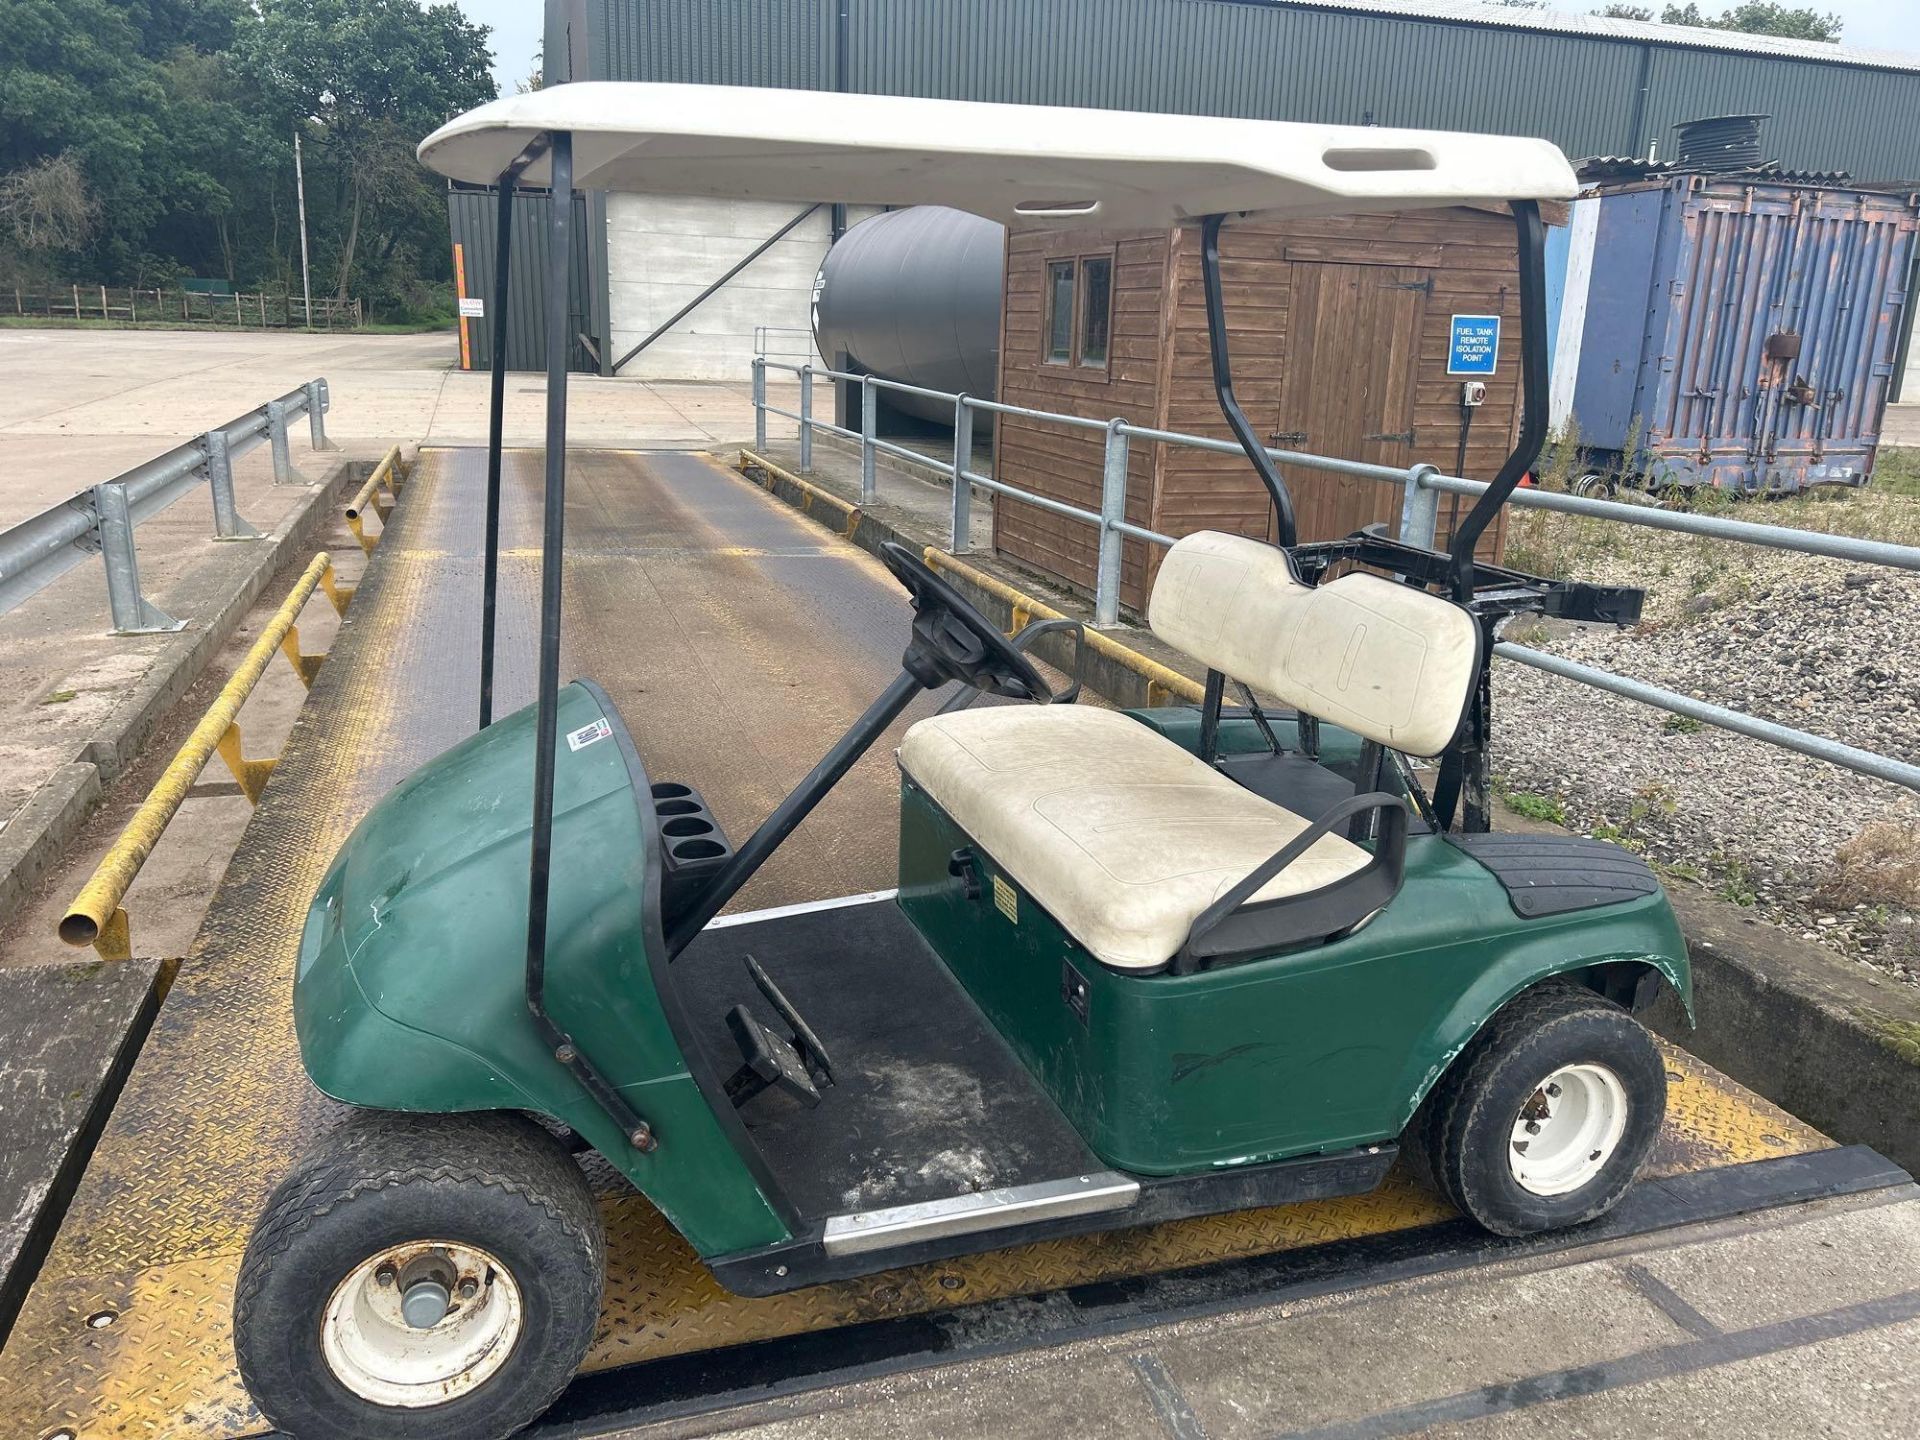 E-Z-GO petrol golf cart, 6.5KW - Image 2 of 6